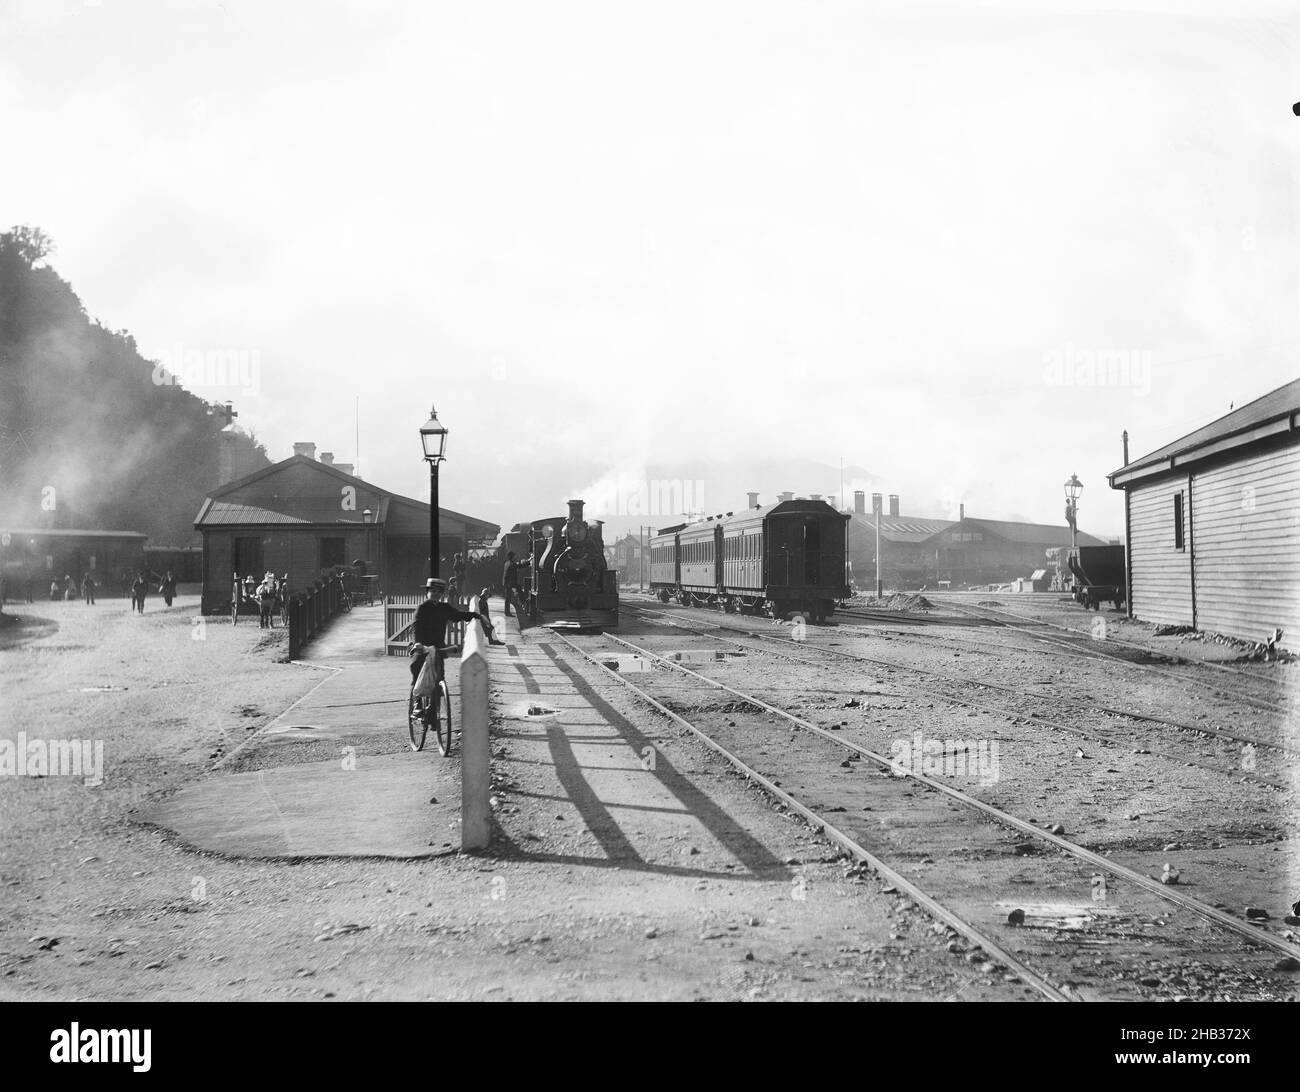 [Greymouth Railway Station], Muir & Moodie Studio, Fotostudio, Neuseeland, Greymouth Railway Station, aufgenommen vom Hokitika-Ende des Hauptbahnhofs. Im linken Hintergrund ist kürzlich ein Zug am Bahnsteig von Riverside angekommen und die an Bord gelangten Passagiere überqueren die Kreuzung von Mackay Street und Mawhera Quay. Rechts, im Hintergrund hinter den Wagen, befinden sich die alten Greymouth-Triebwerksschuppen, die um 1929 abgerissen wurden. Der Schuppen, im Vordergrund rechts, wurde ebenfalls vor 1969 abgerissen Stockfoto